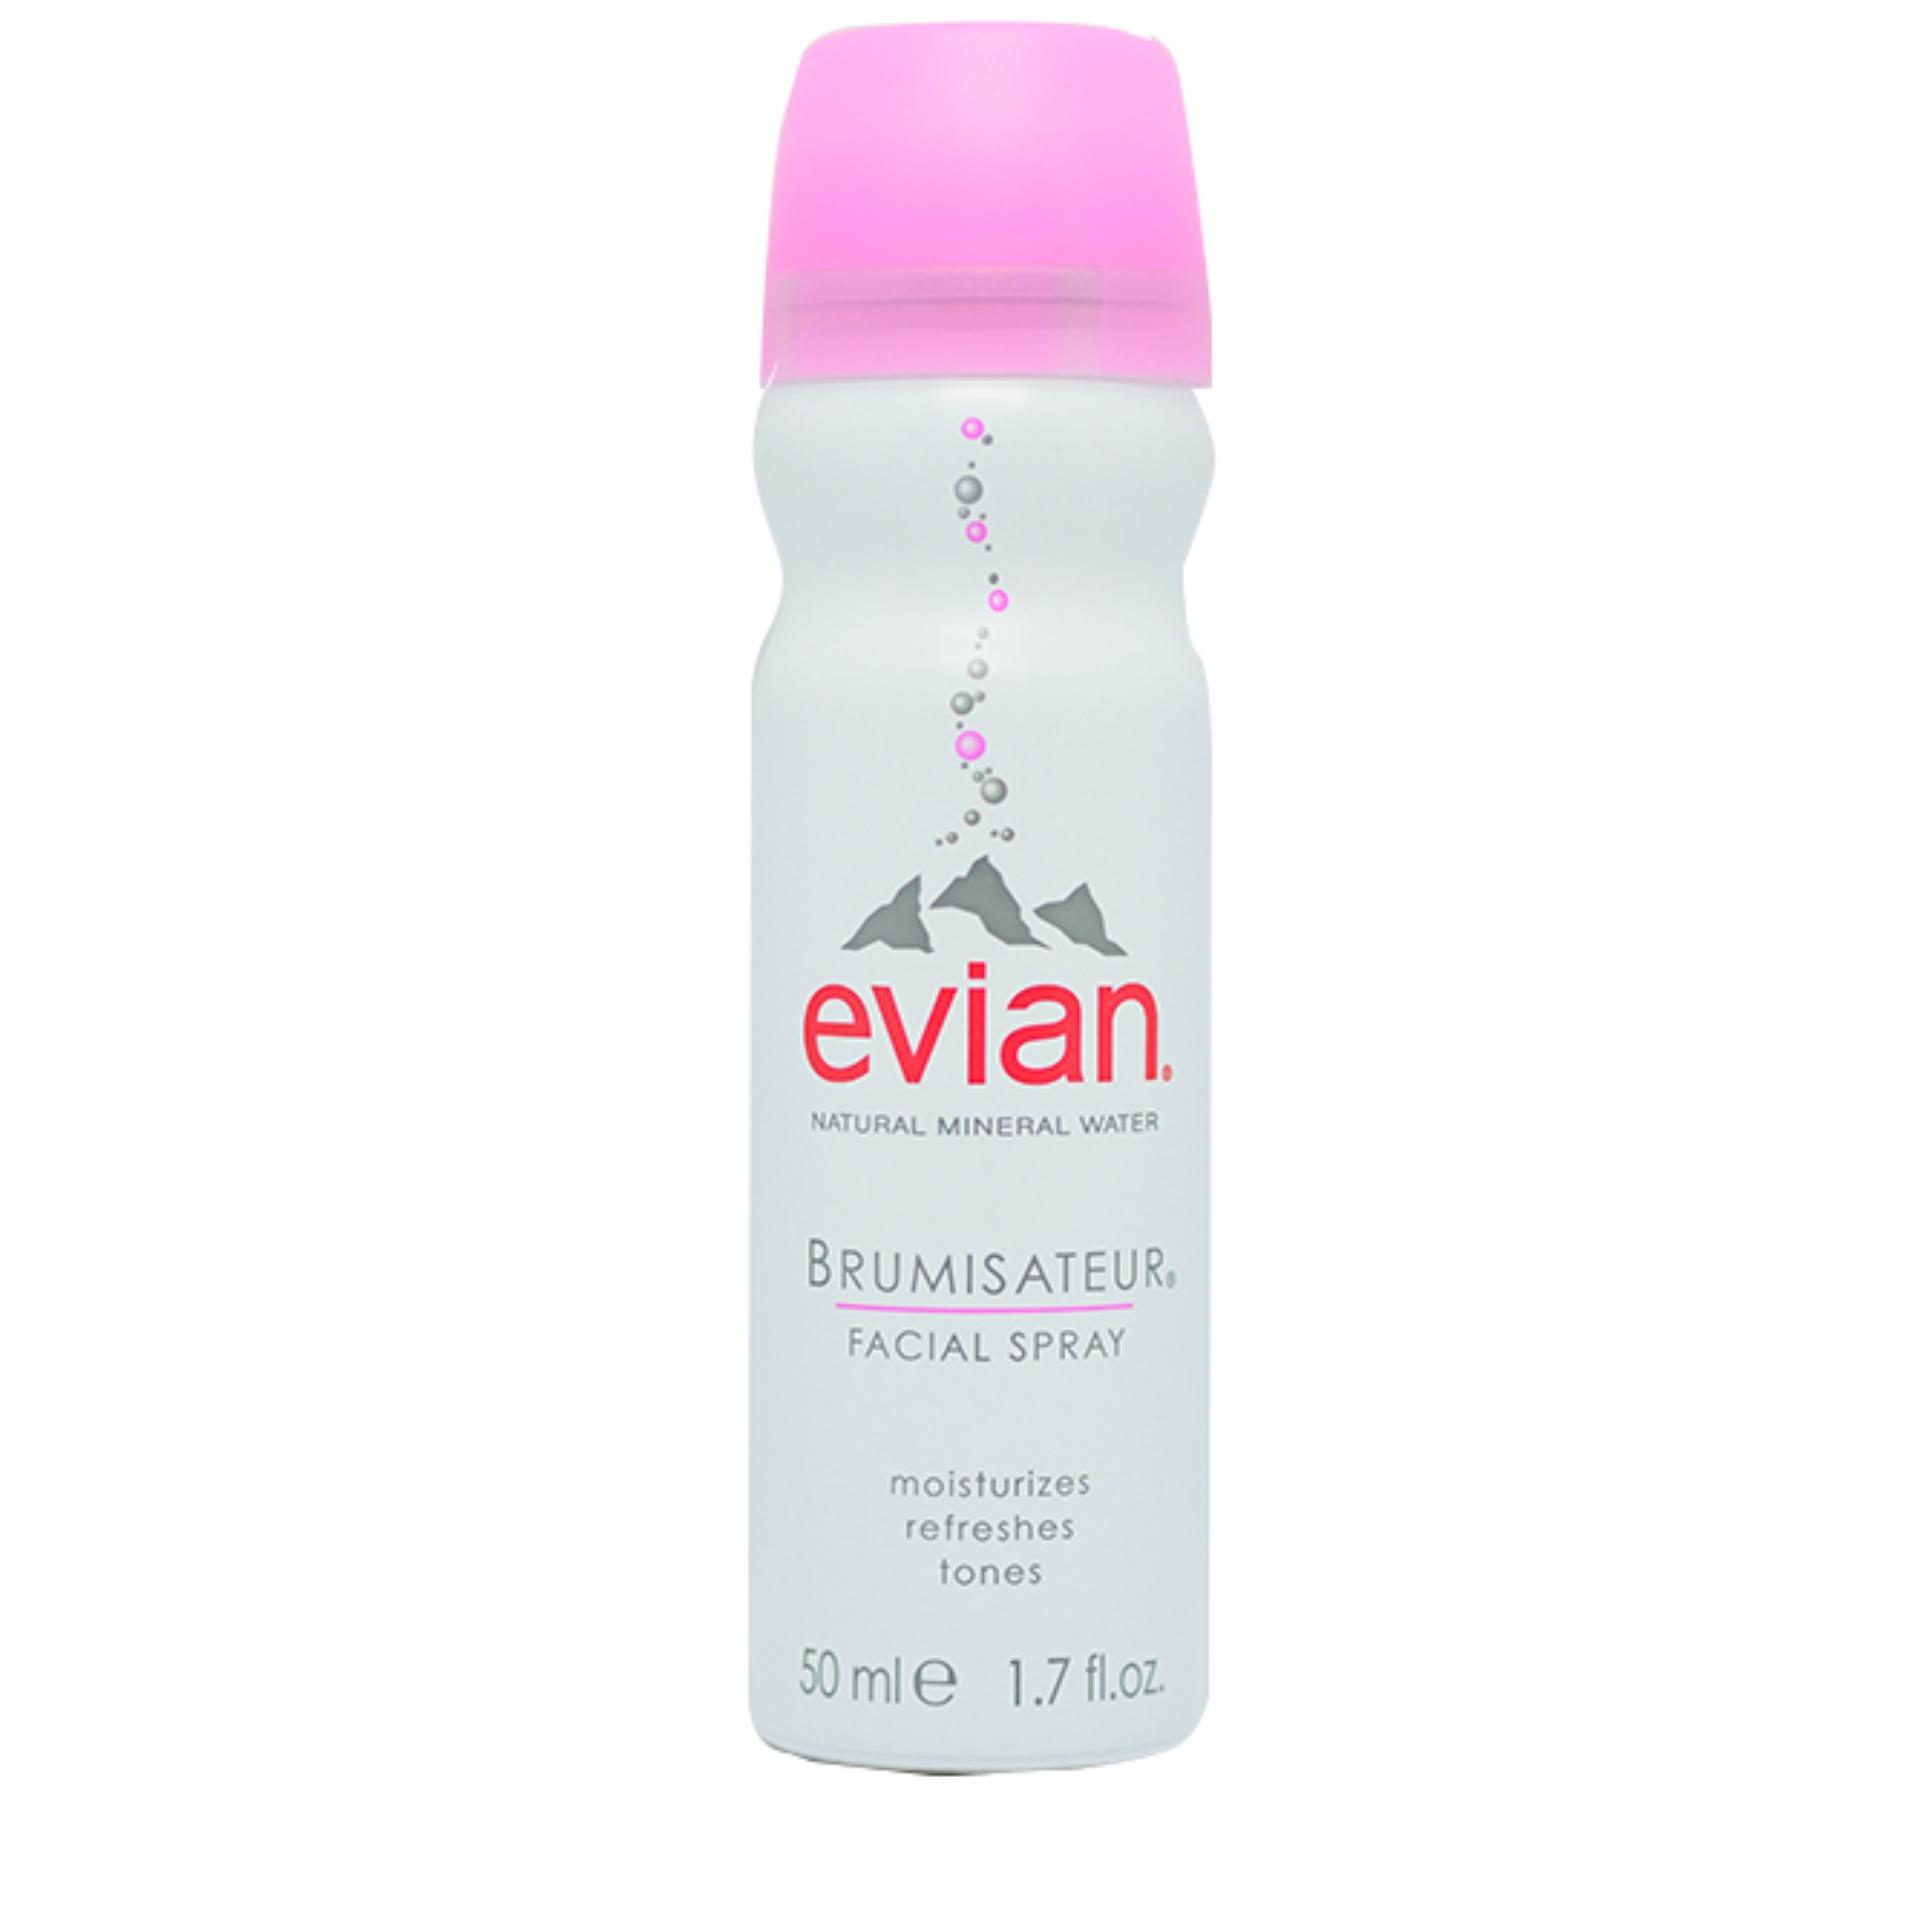 Термальная вода спрей для лица. Evian Brumisateur. Evian 50 ml. Evian facial Spray. Evian термальная вода для лица.